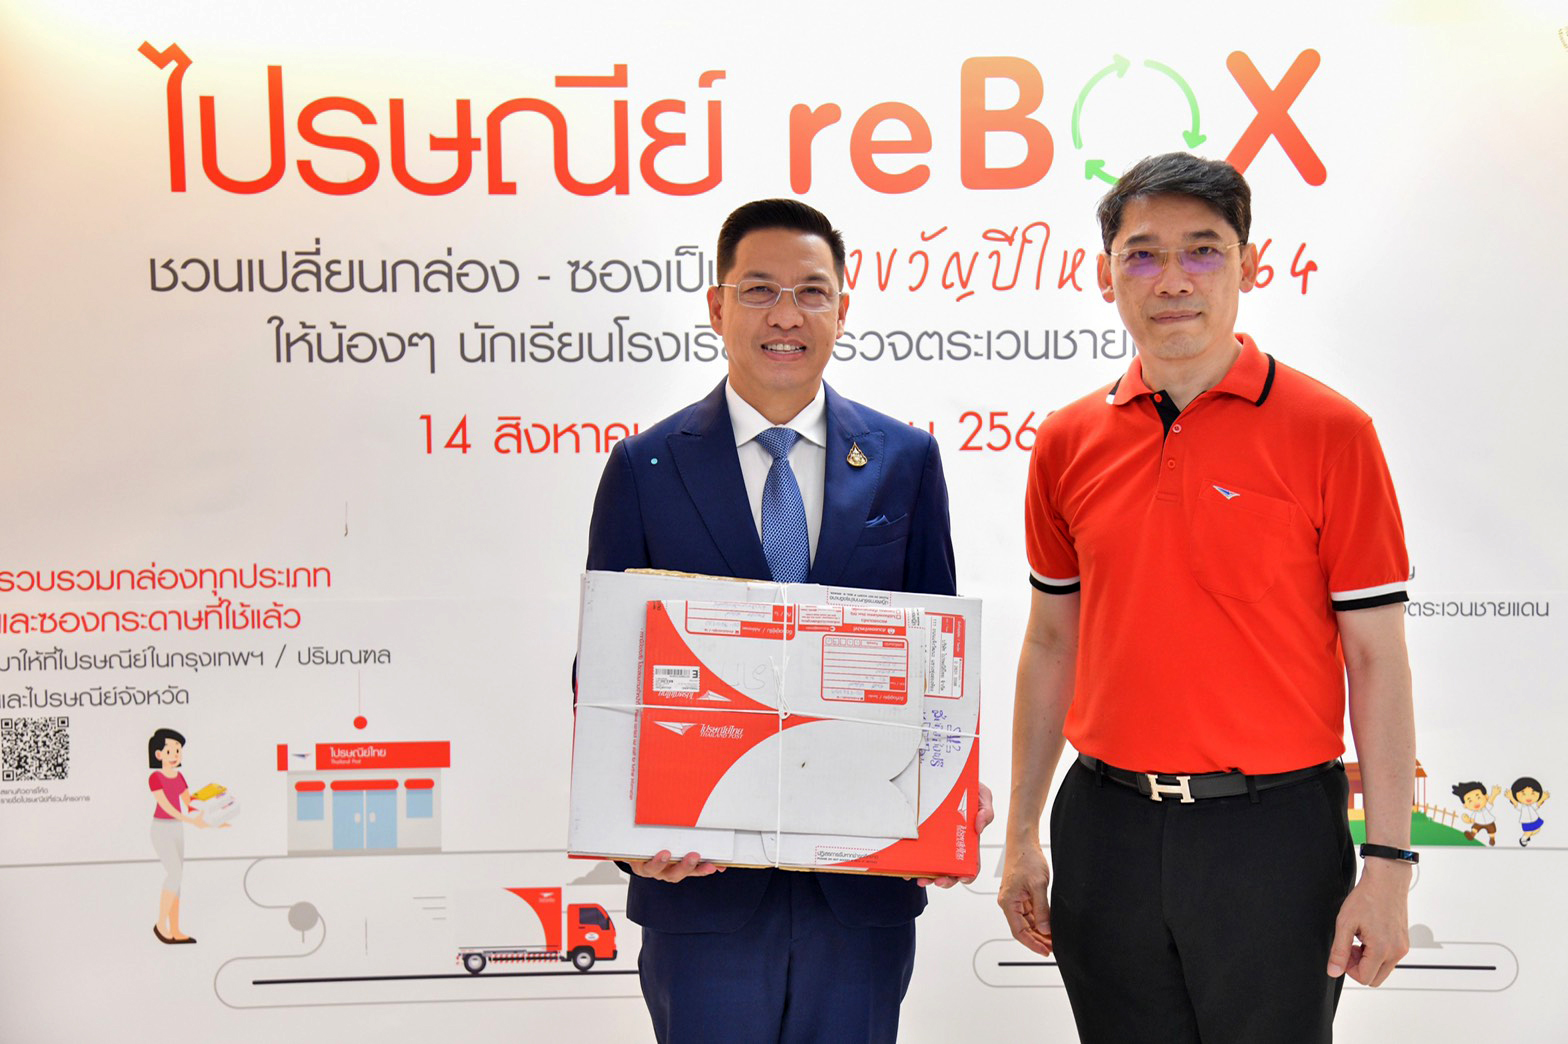 รมว.ดีอีเอส มอบนโยบายไปรษณีย์รับยุทธศาสตร์ชาติ พร้อมชวนคนไทยร่วมแคมเปญ ไปรษณีย์ reBOX เปลี่ยนกล่องซองเก่าเป็นของขวัญปีใหม่